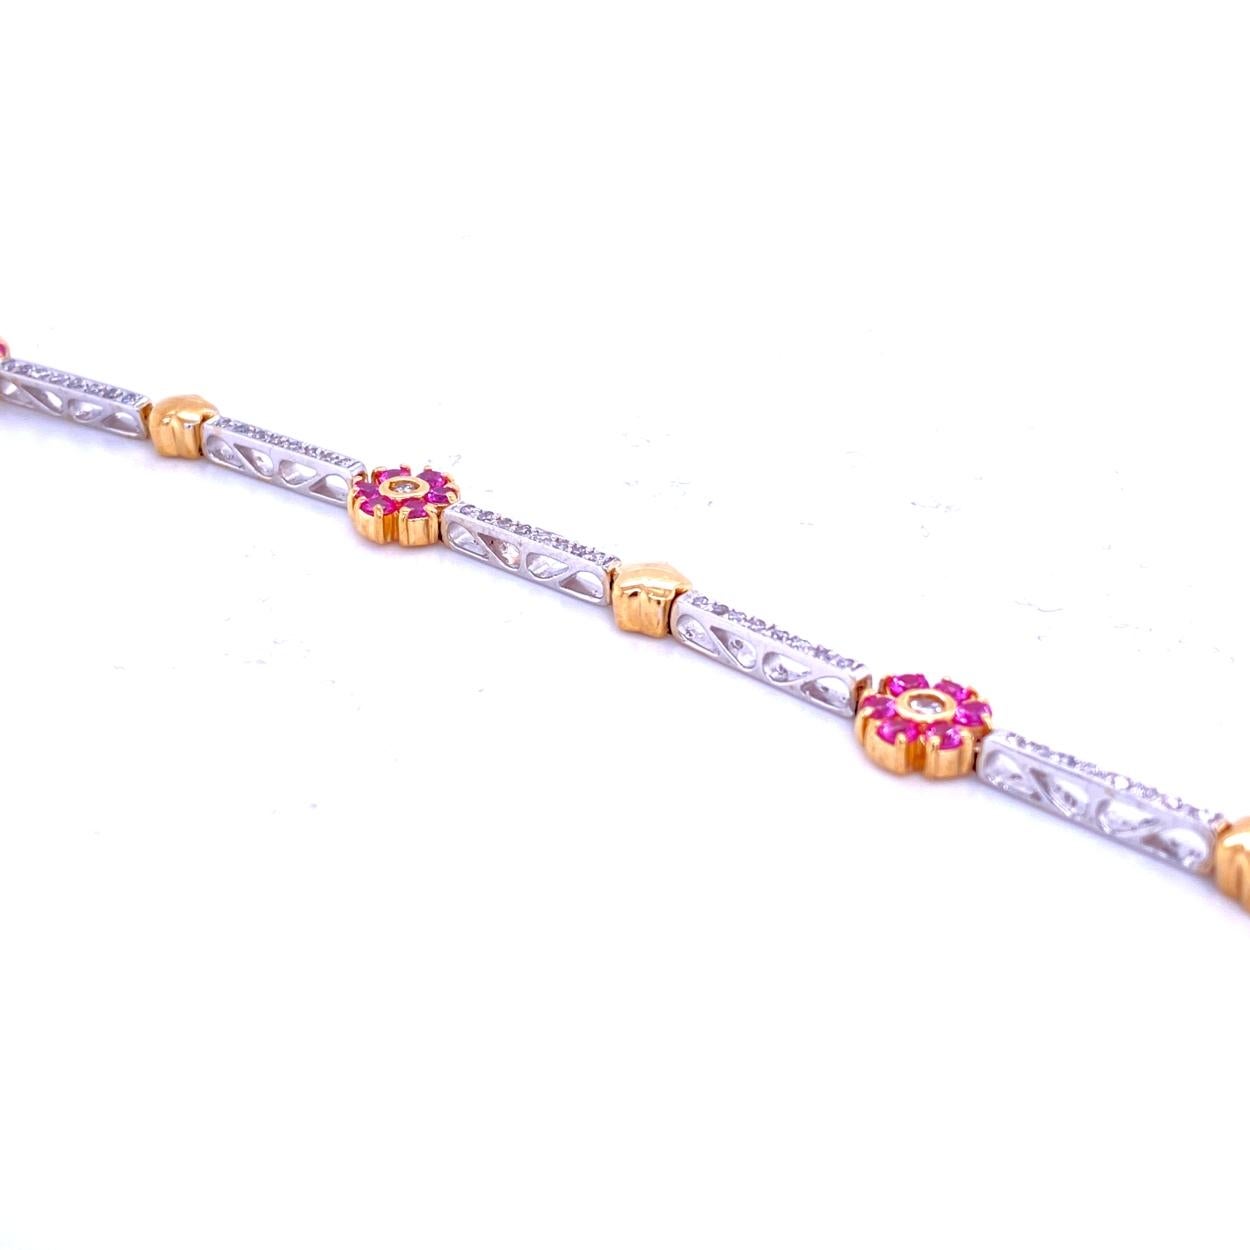 Ce bracelet en diamant/saphir rose est composé de 7 barrettes serties de pavés, de 4 grappes rondes de saphir rose avec centre en diamant et de 4 étoiles en or jaune.  Le bracelet est fabriqué en or bicolore 14K avec un total de 0,67 Ct de diamants